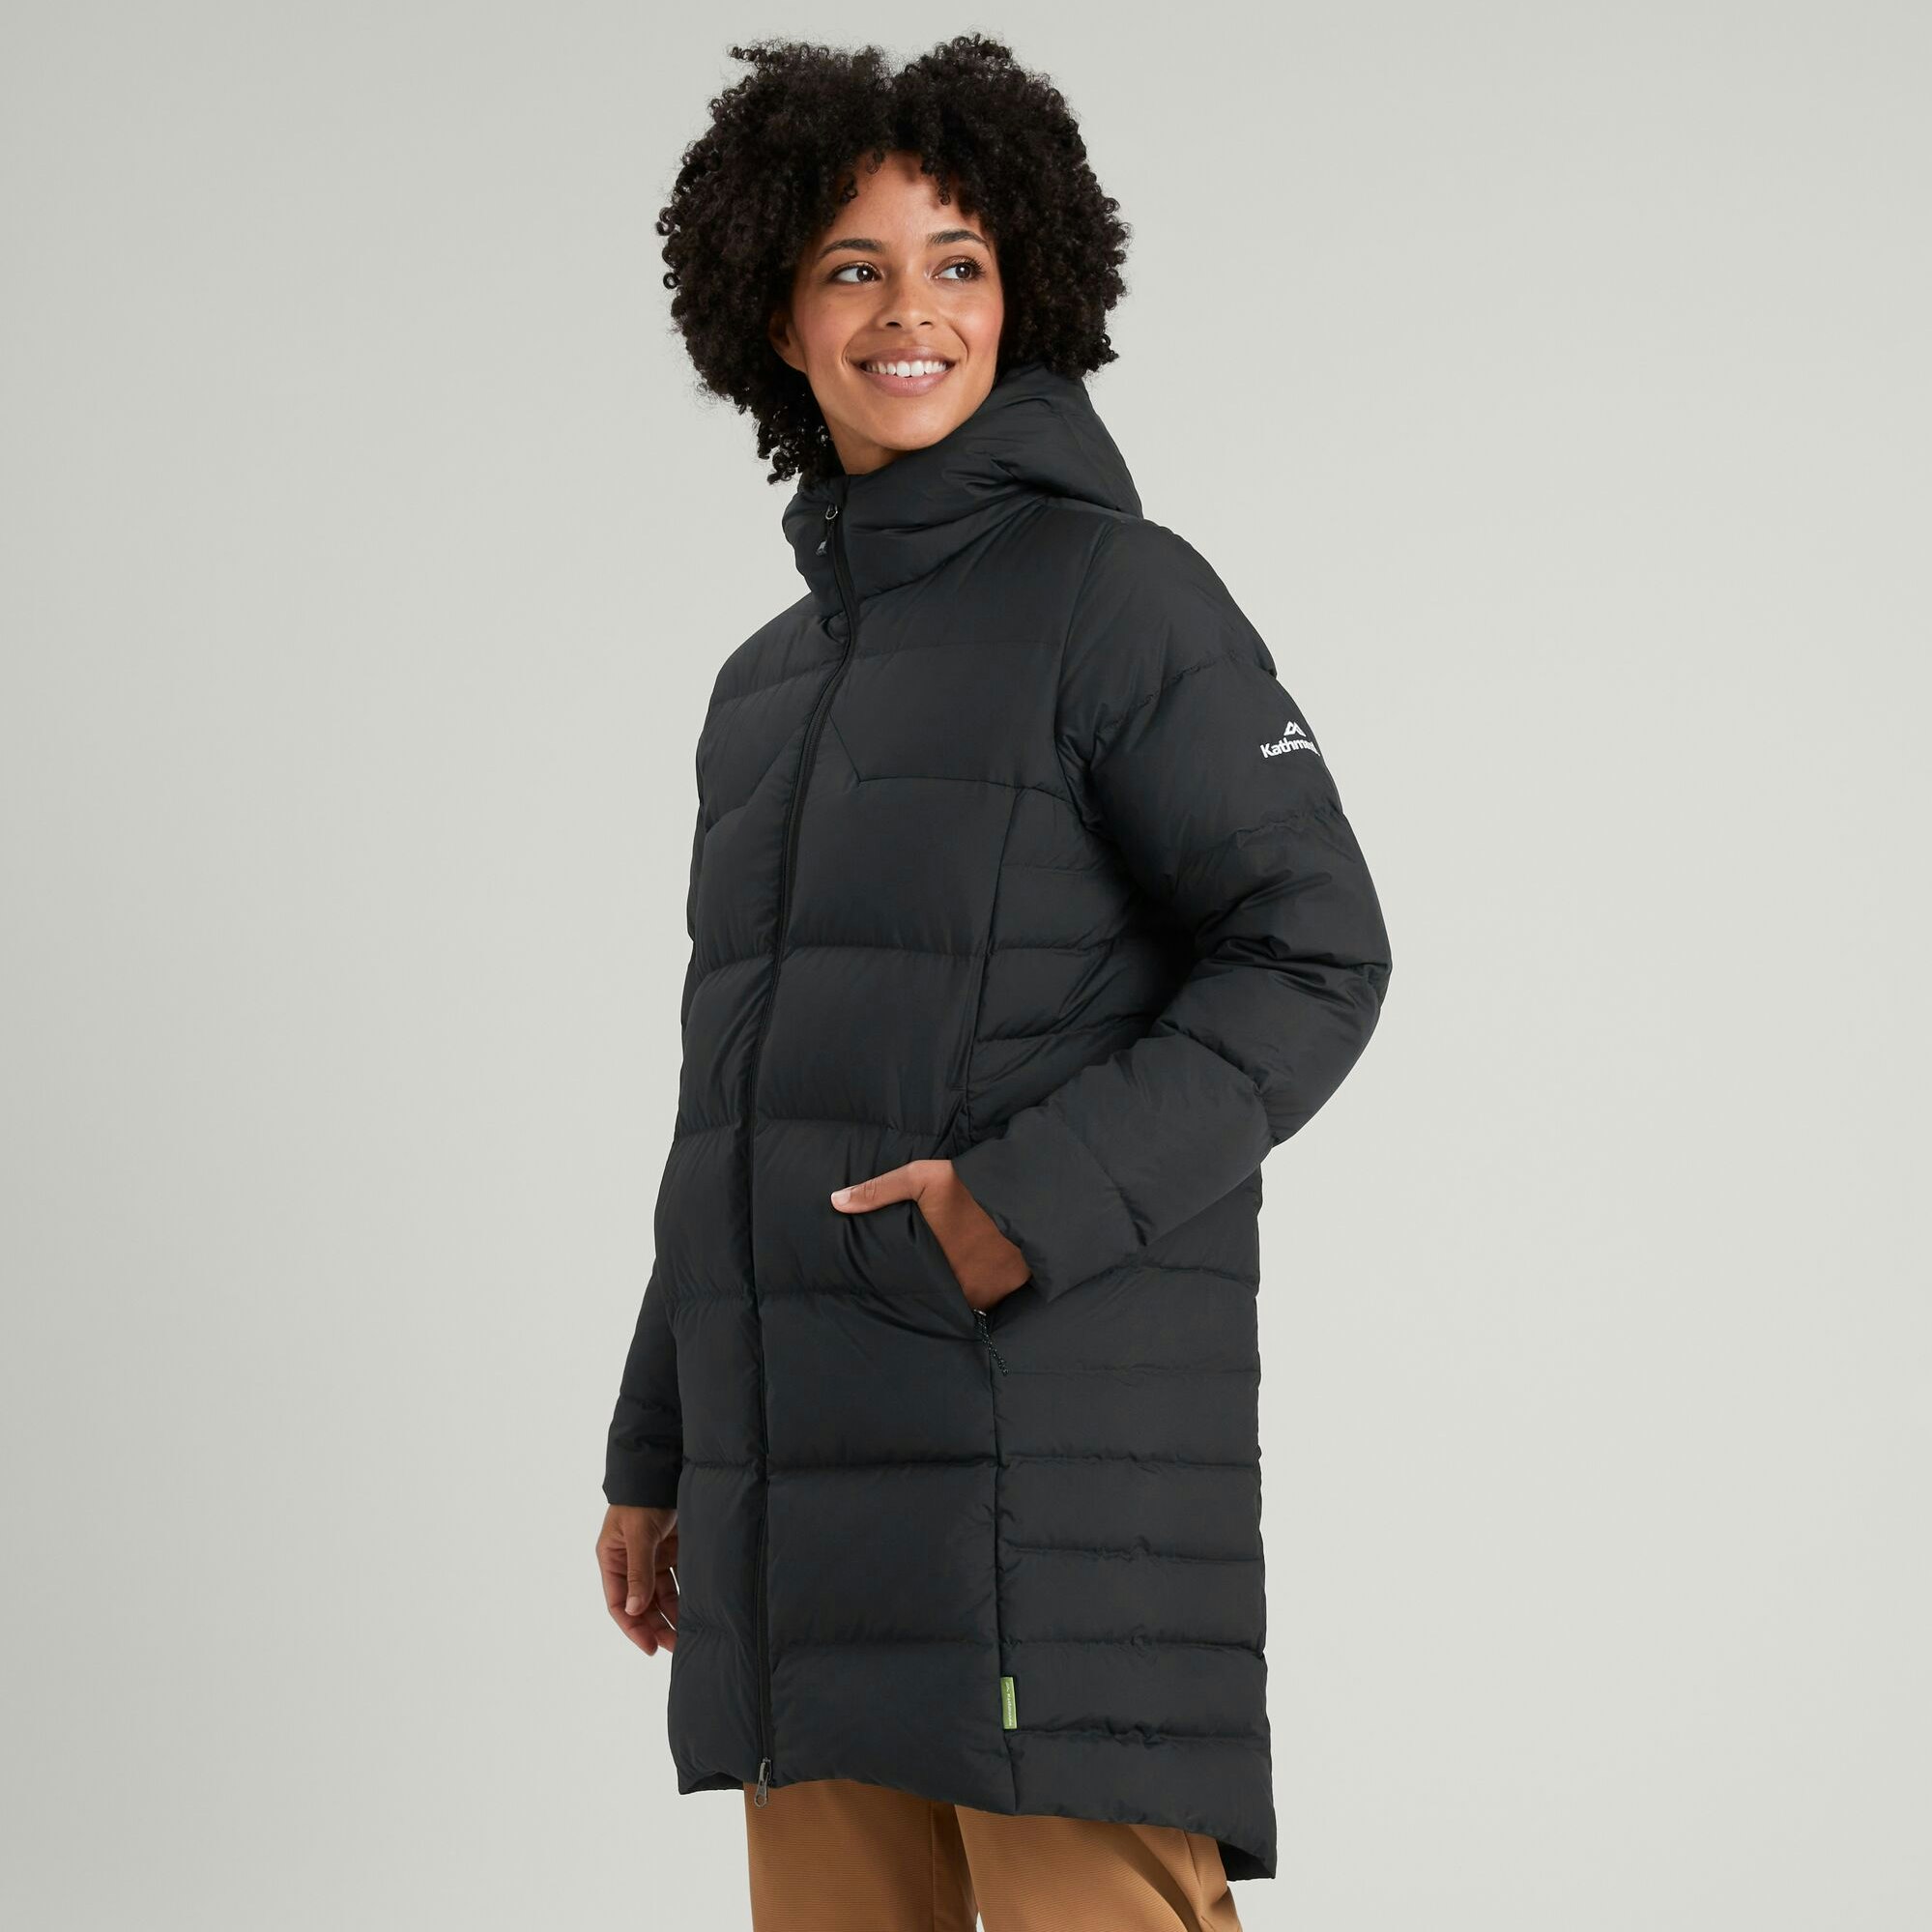 LUGOGNE Womens Puffer Jackets Long Winter Coats Warm Nepal